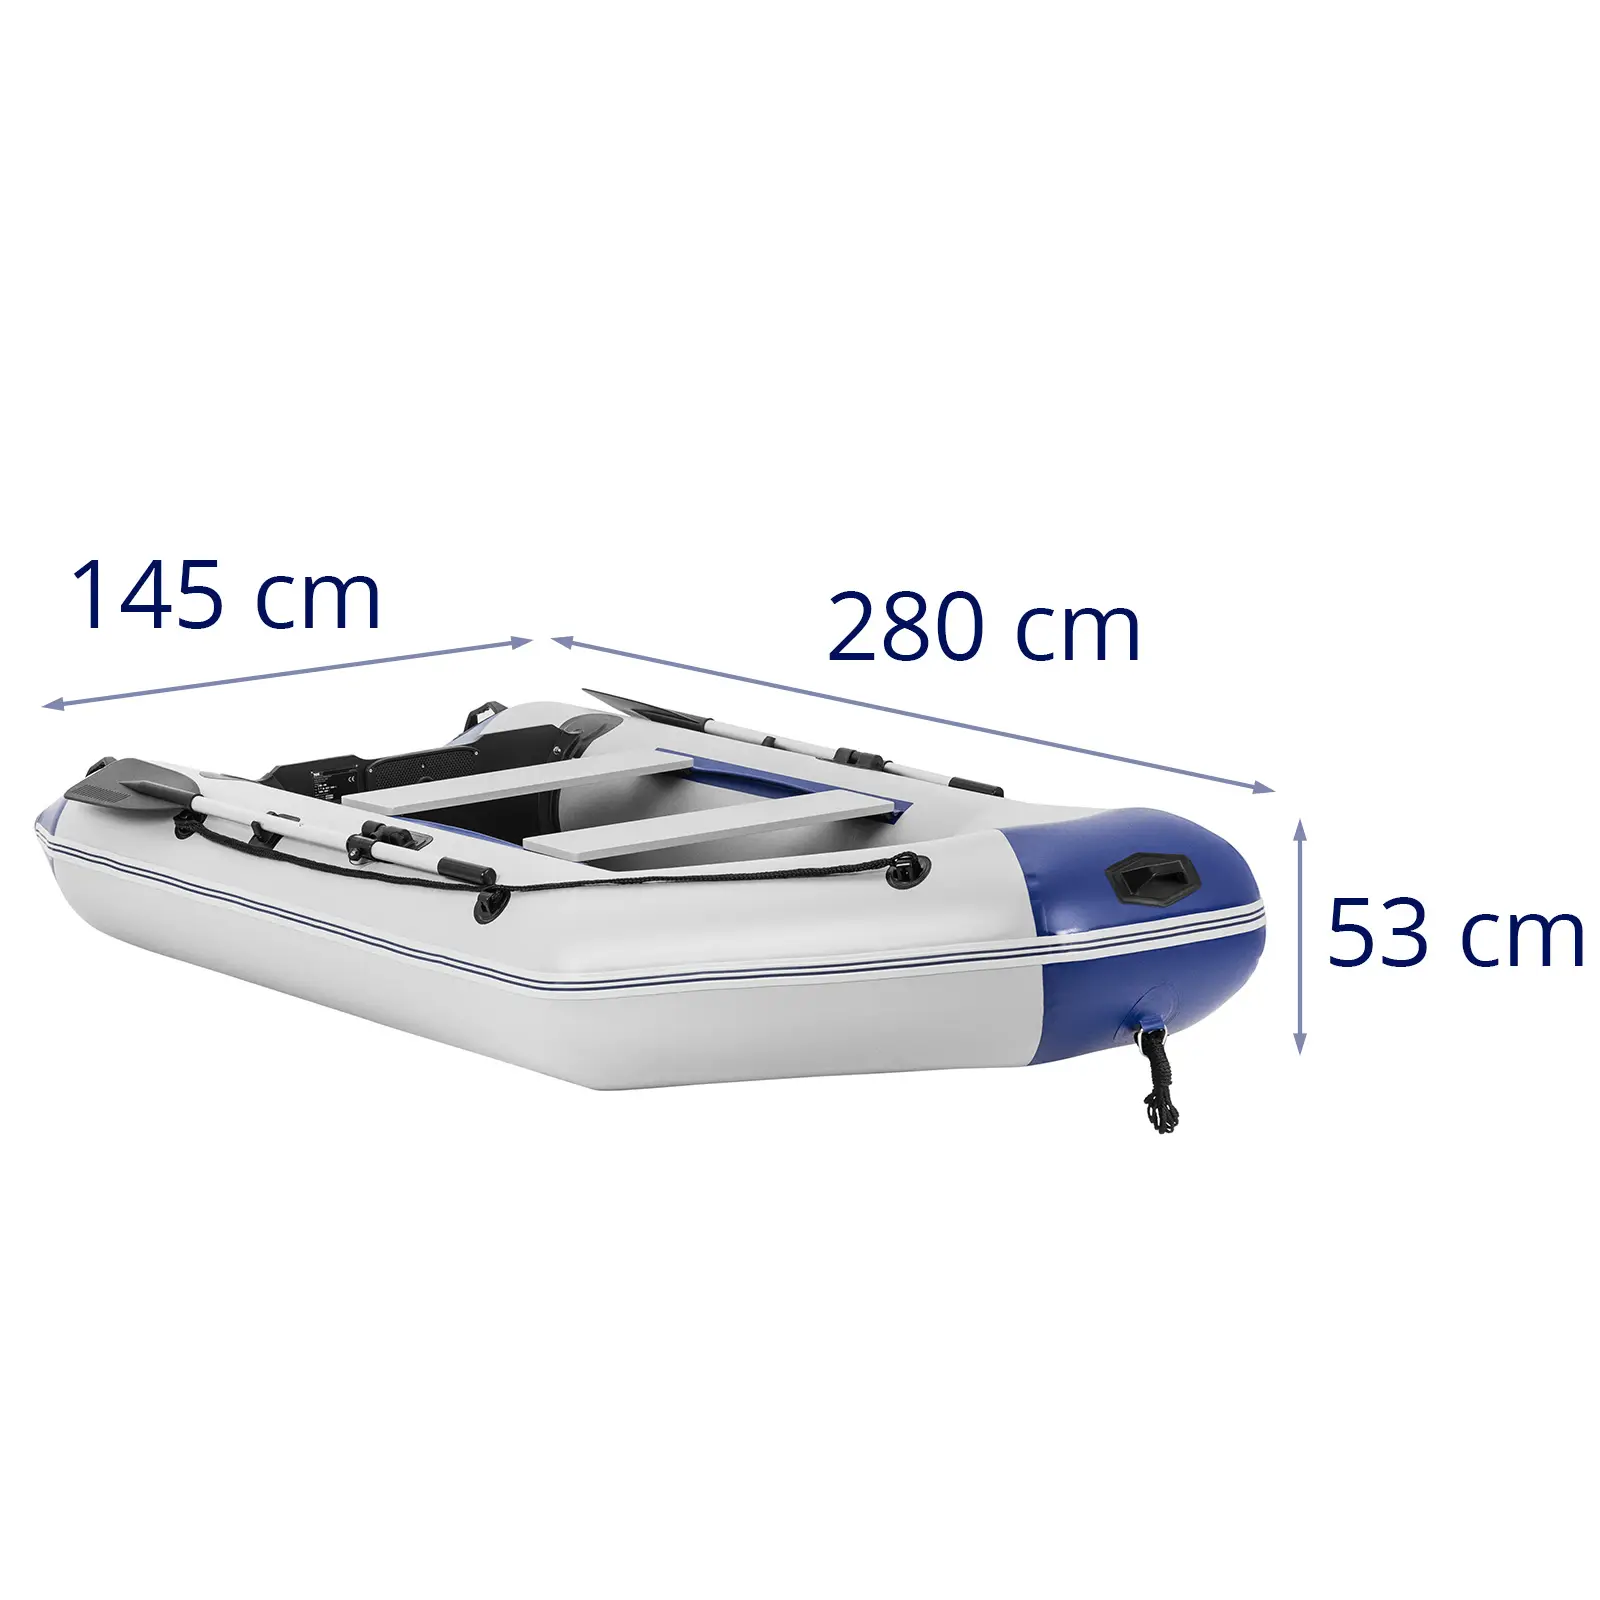 Barca neumática - azul/blanca - 280 kg - suelo de madera - 3 personas